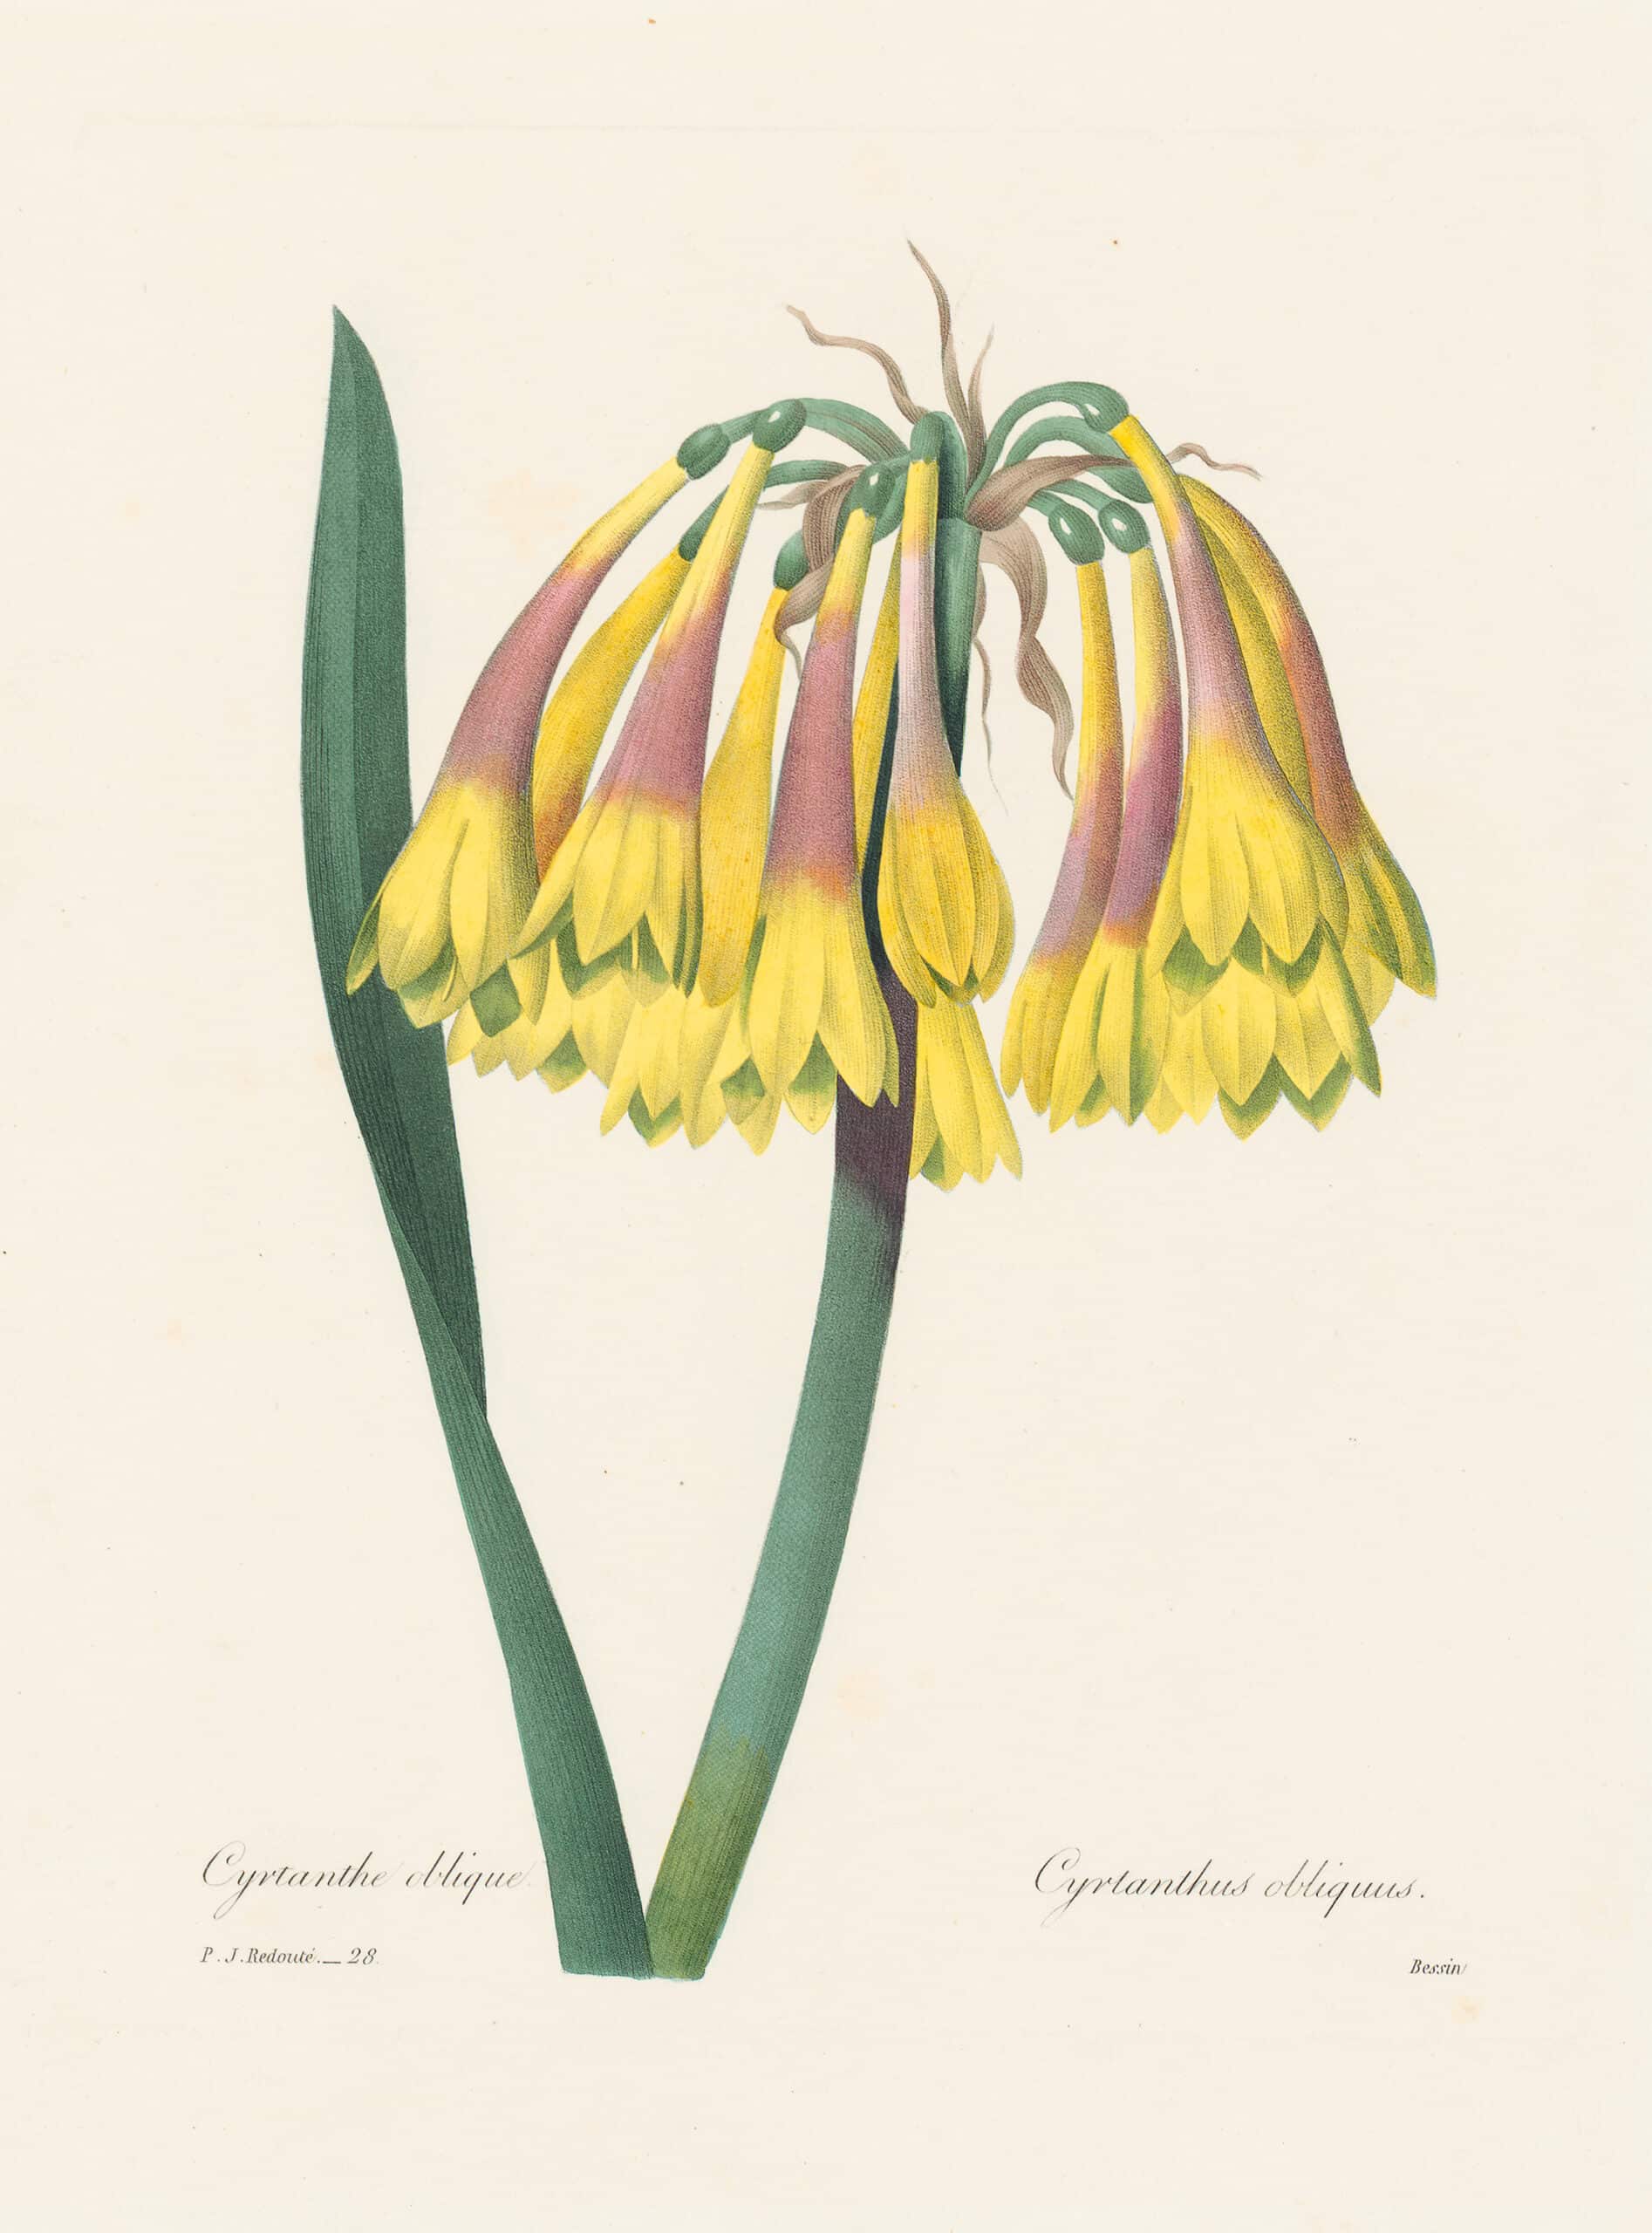 Choix des plus belles Fleurs - Oppenheimer Editions | Botanical Art ...